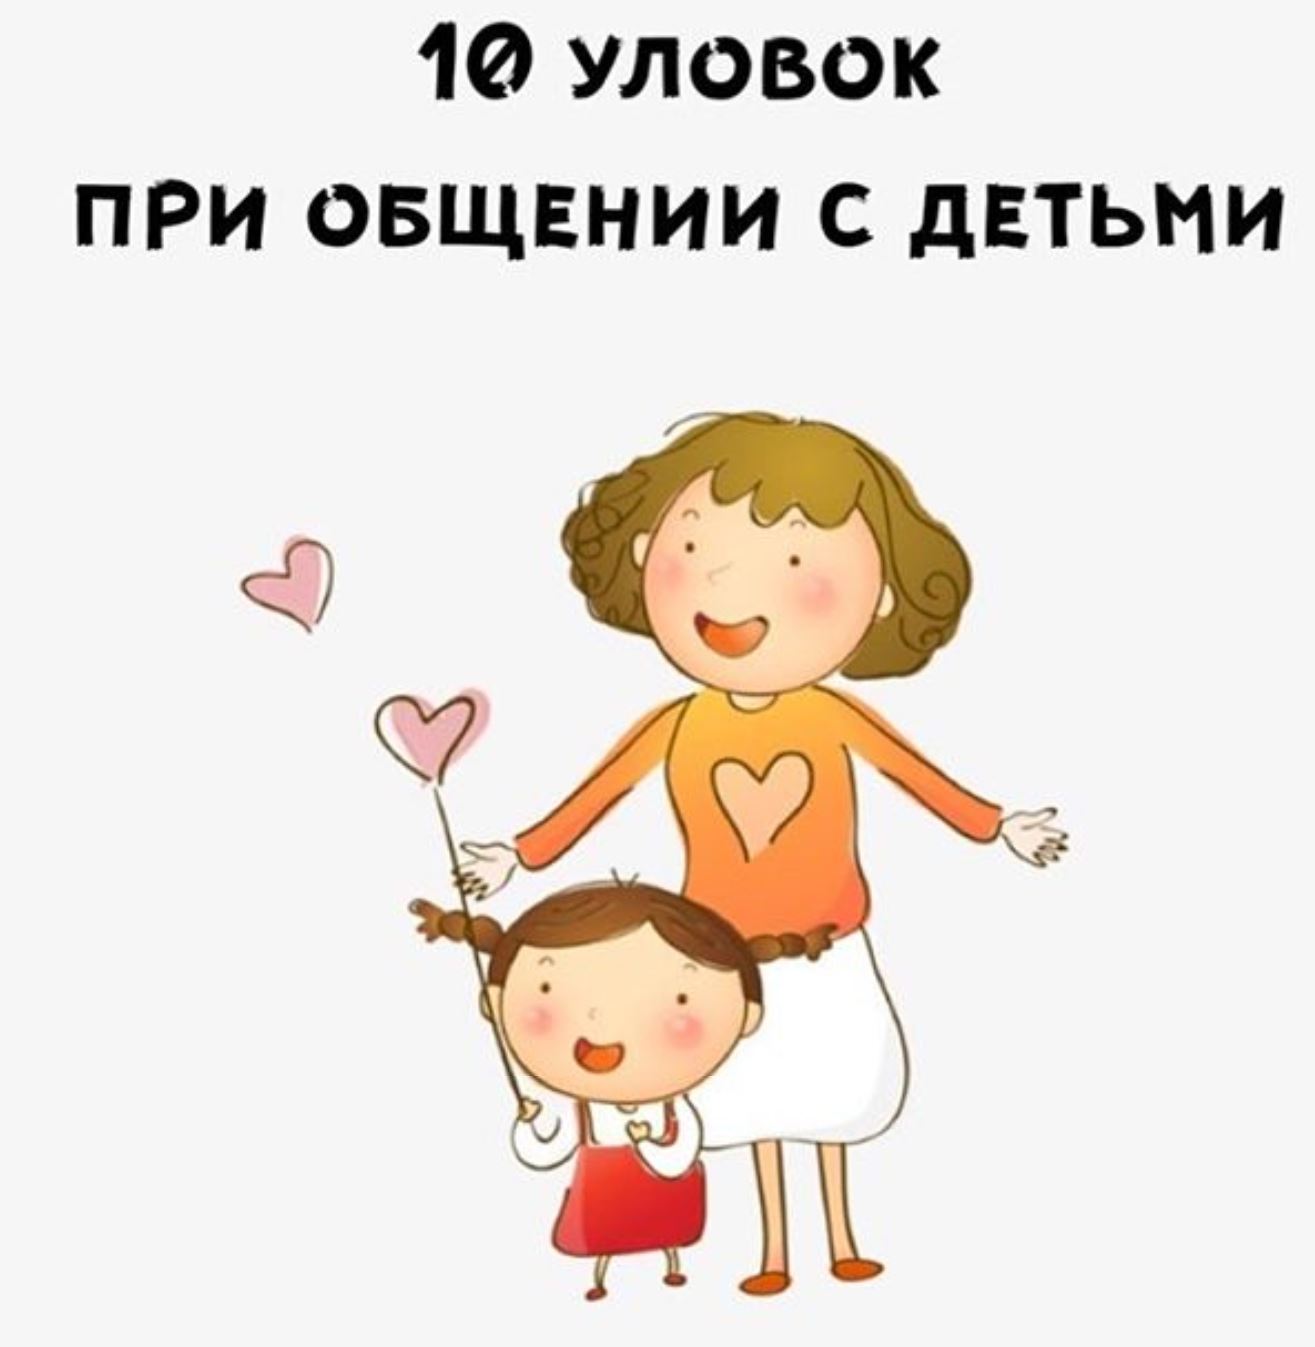 10 حيل عند التعامل مع الأطفال